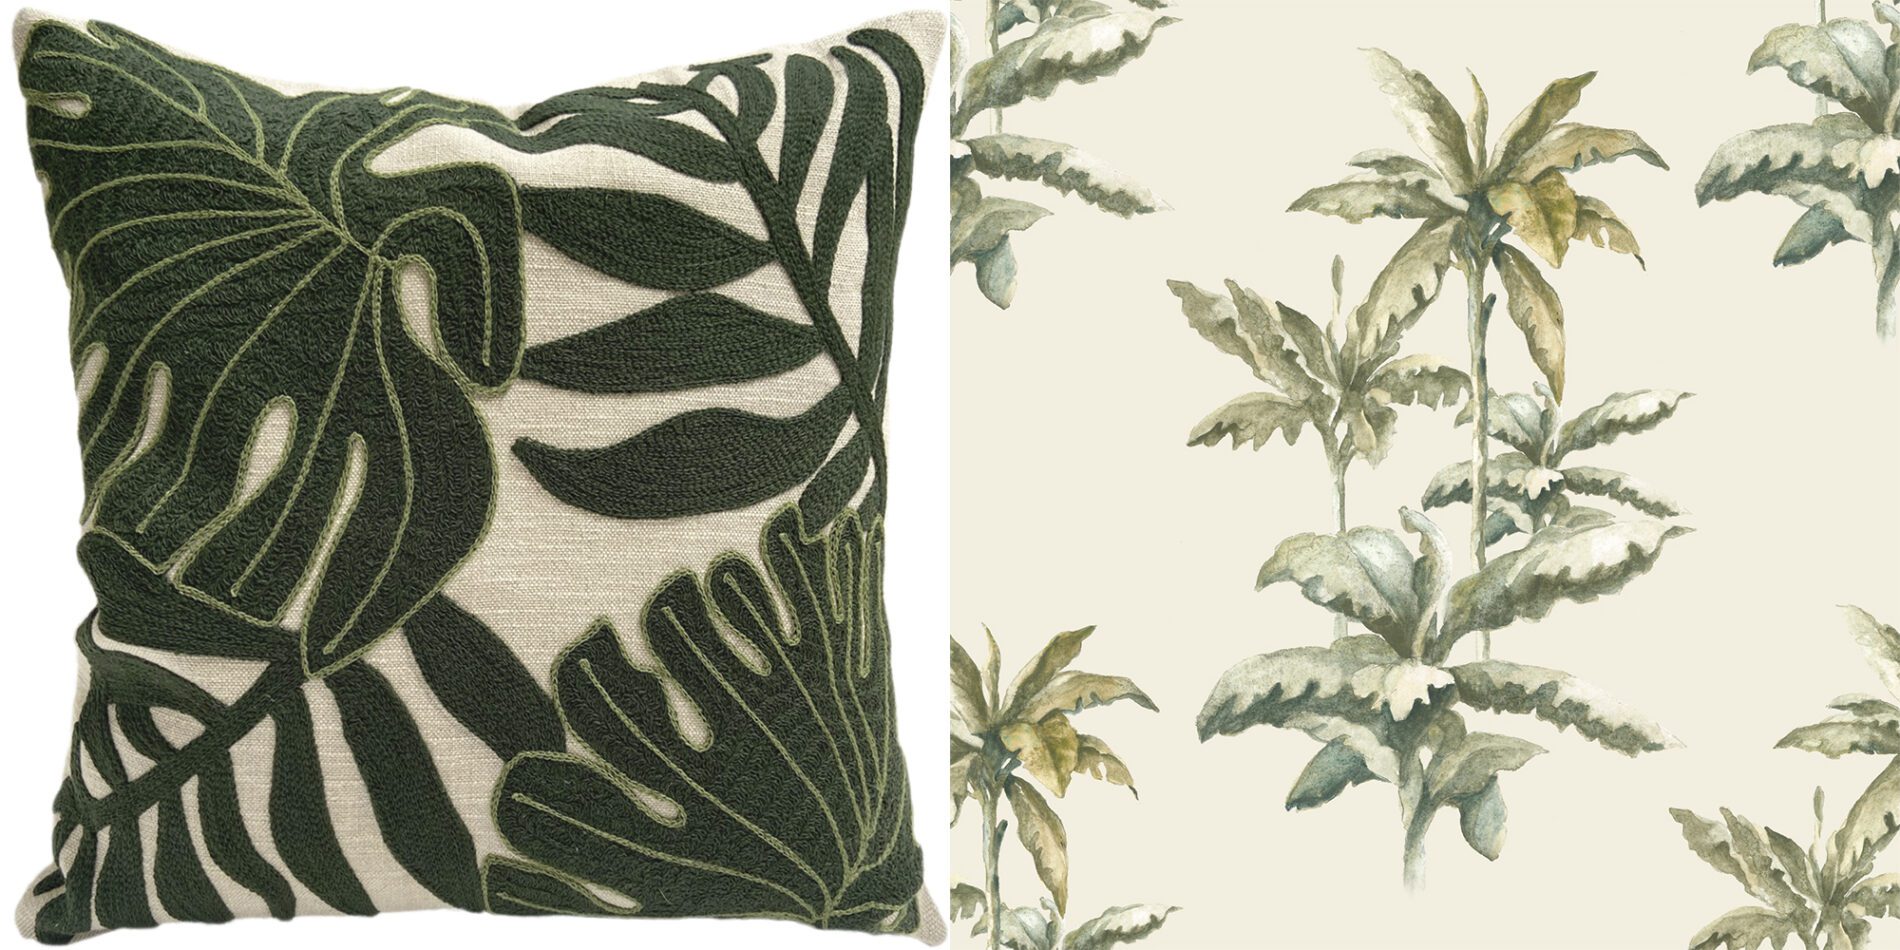 Almofada com bordado inspirado nas folhagens amazônicas e papel de parede com palmeiras, da coleção Raízes | Fotos: Divulgação/ Montagem